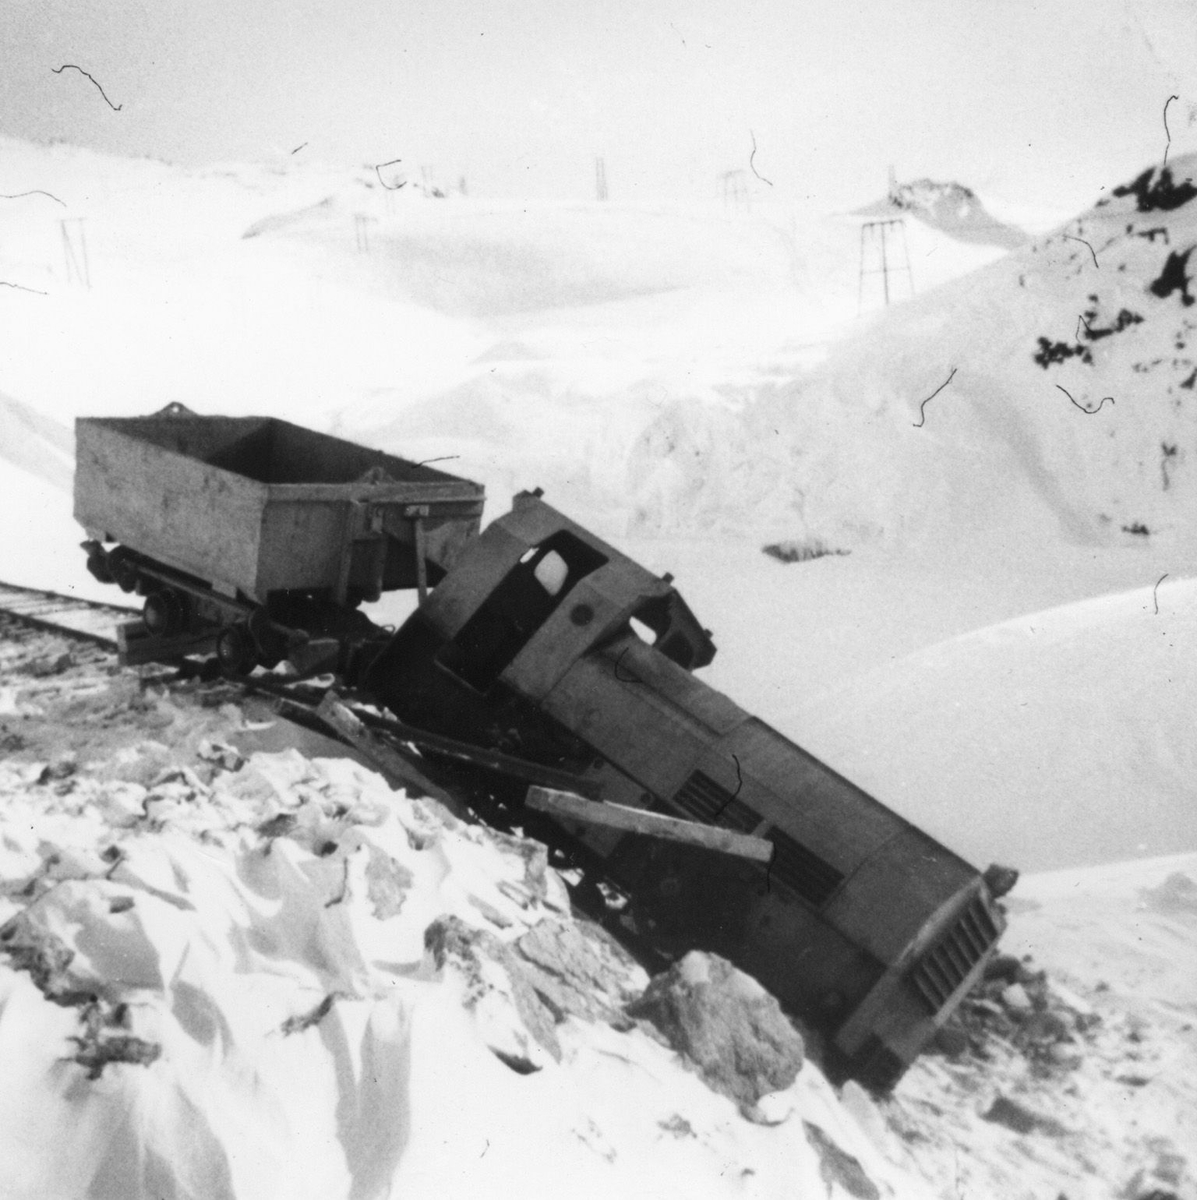 Lokomotiv med vagge havarert i snøen på anleggsstaden i Tyssedalsfjellet.